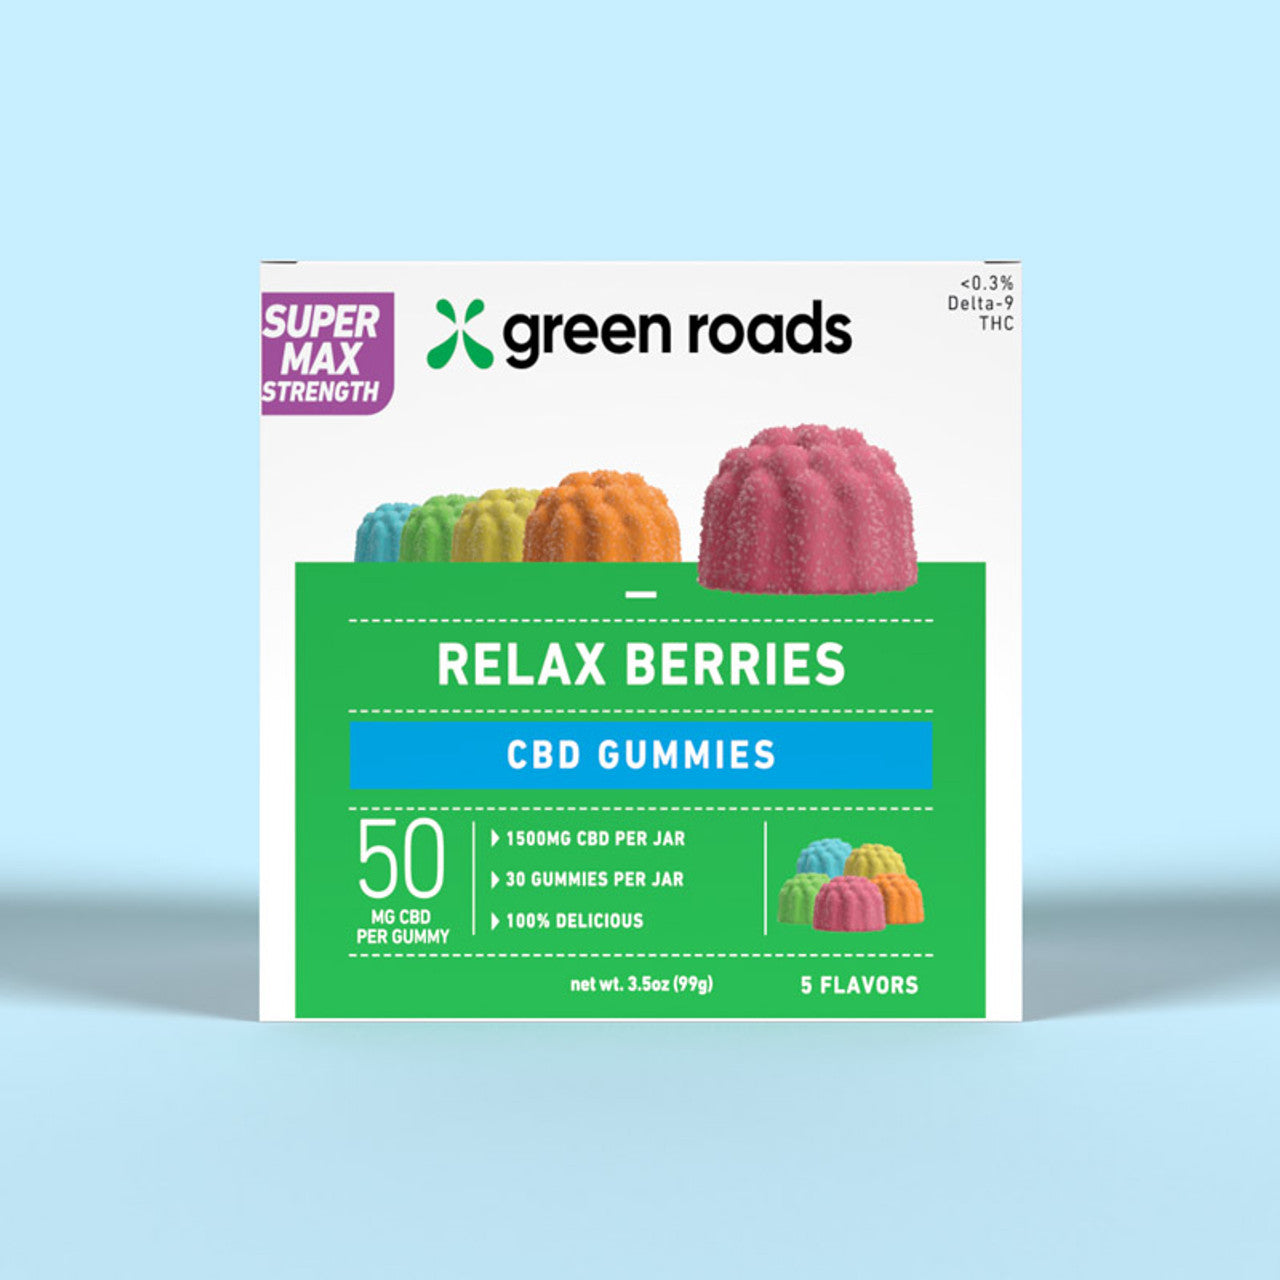 Green Roads Super Max Strength CBD Relax Berries - (30ct) 1,500mg Best Price